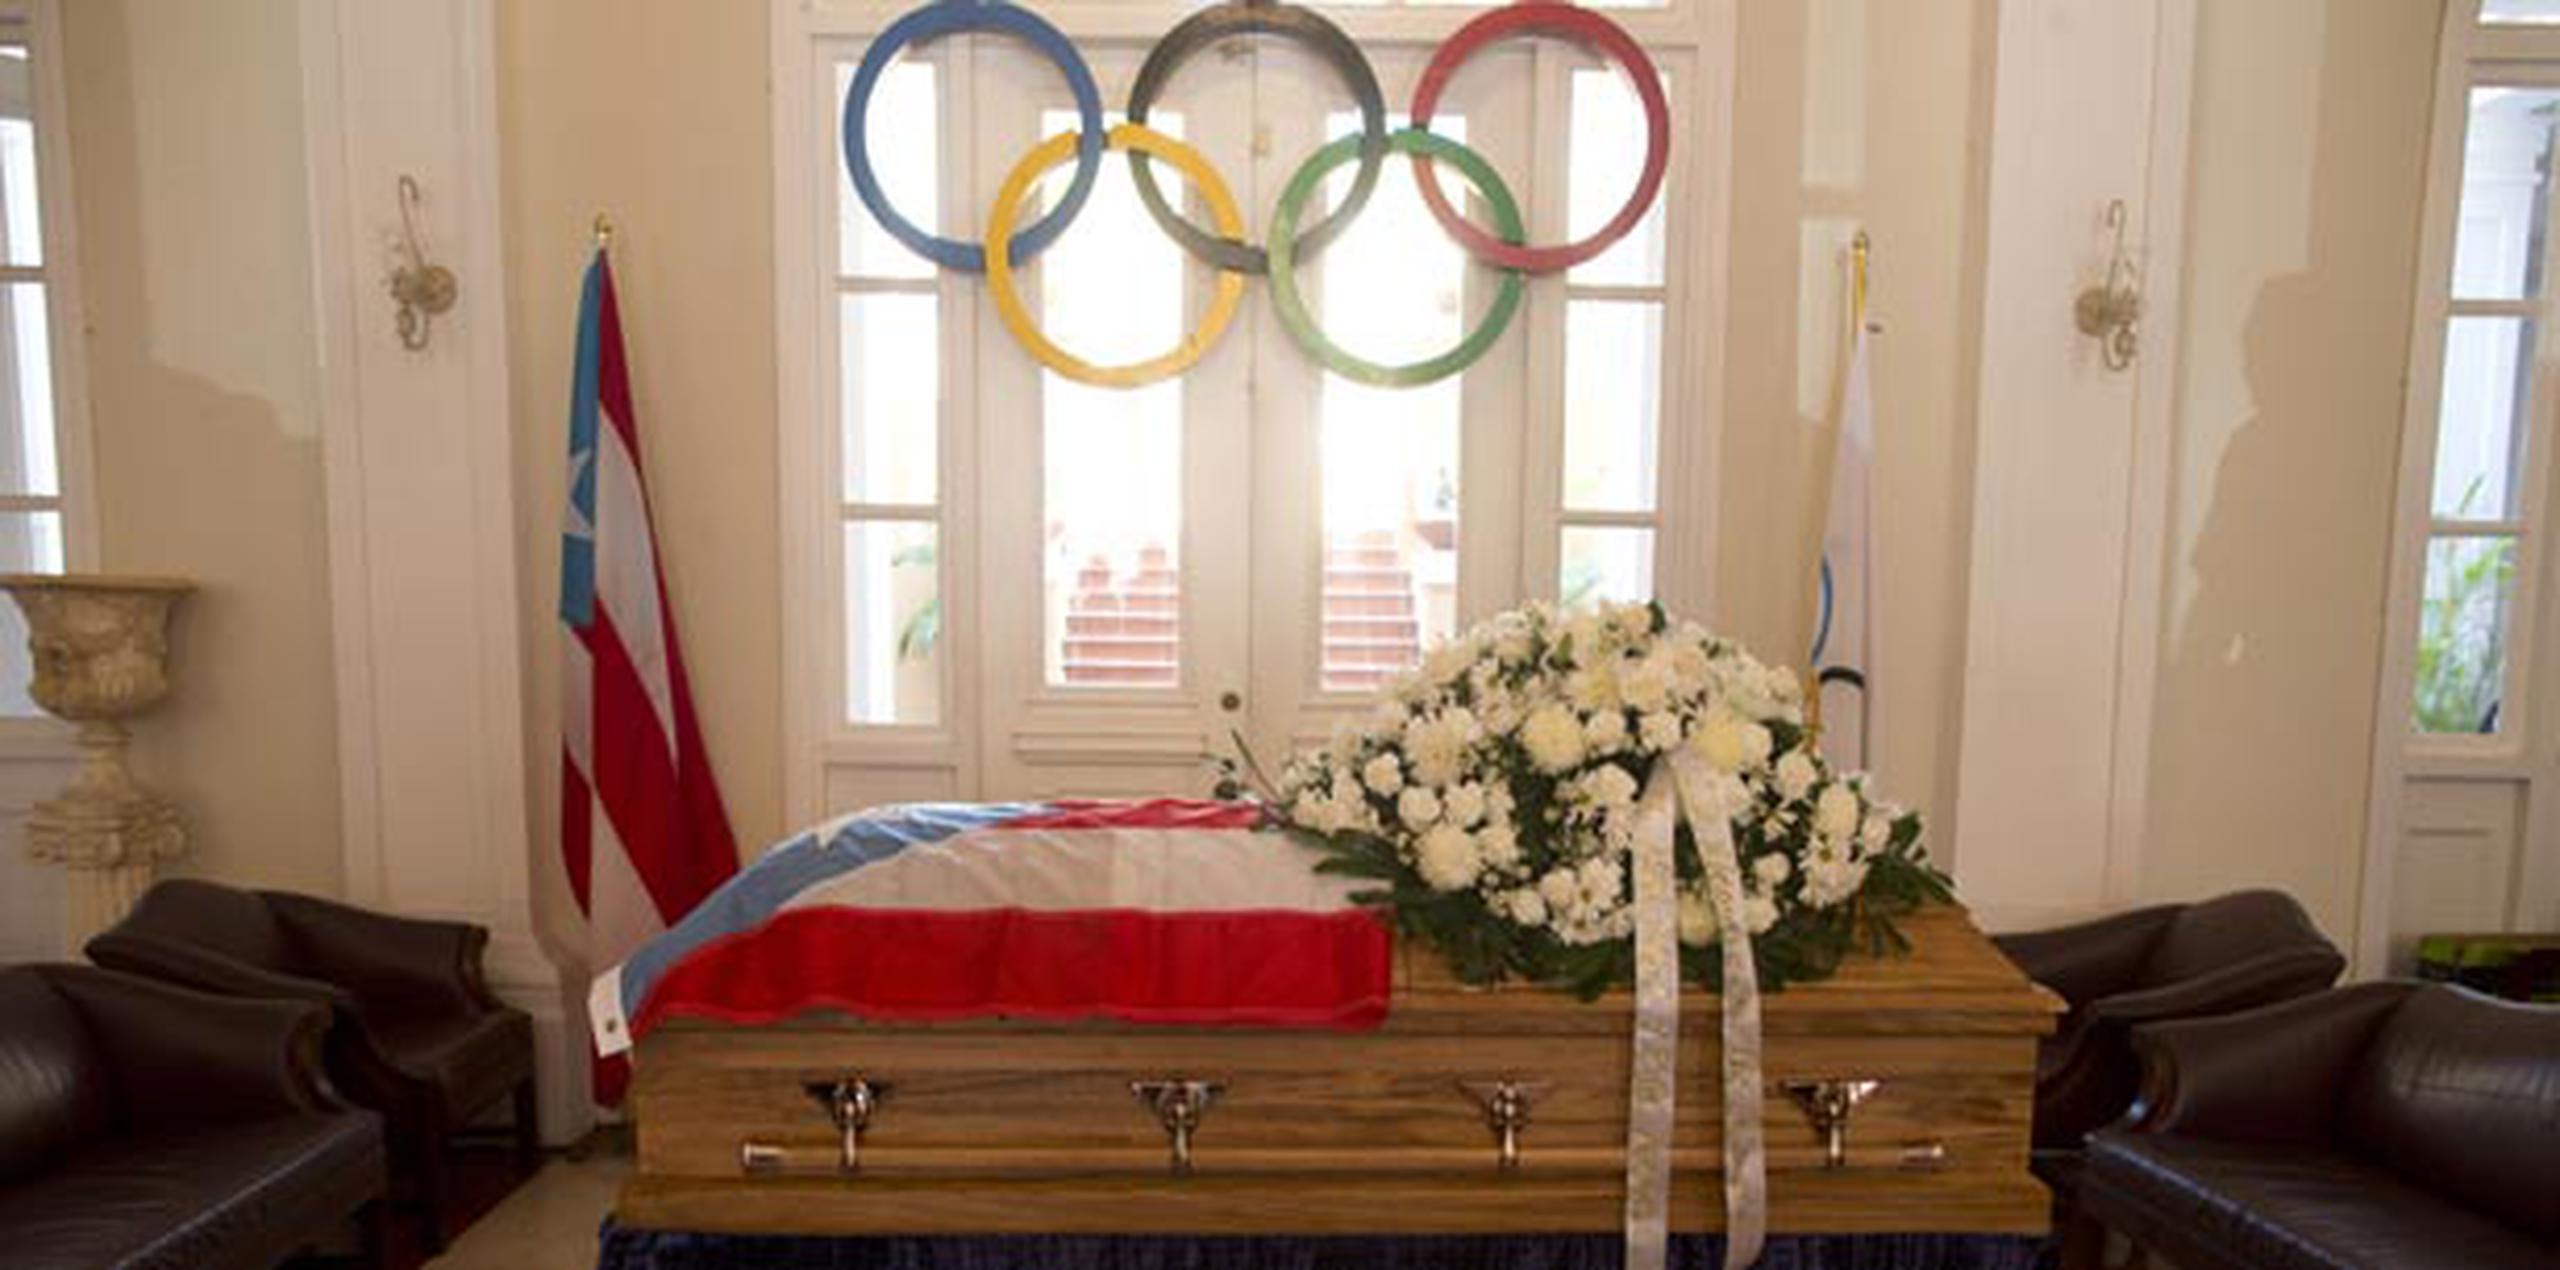 El ataúd con los restos mortales de Reinaldo “Pochy” Oliver adornó el vestíbulo principal del lugar que alberga las oficinas del Comité Olímpico de Puerto Rico (Copur). (xavier.araujo@gfrmedia.com)